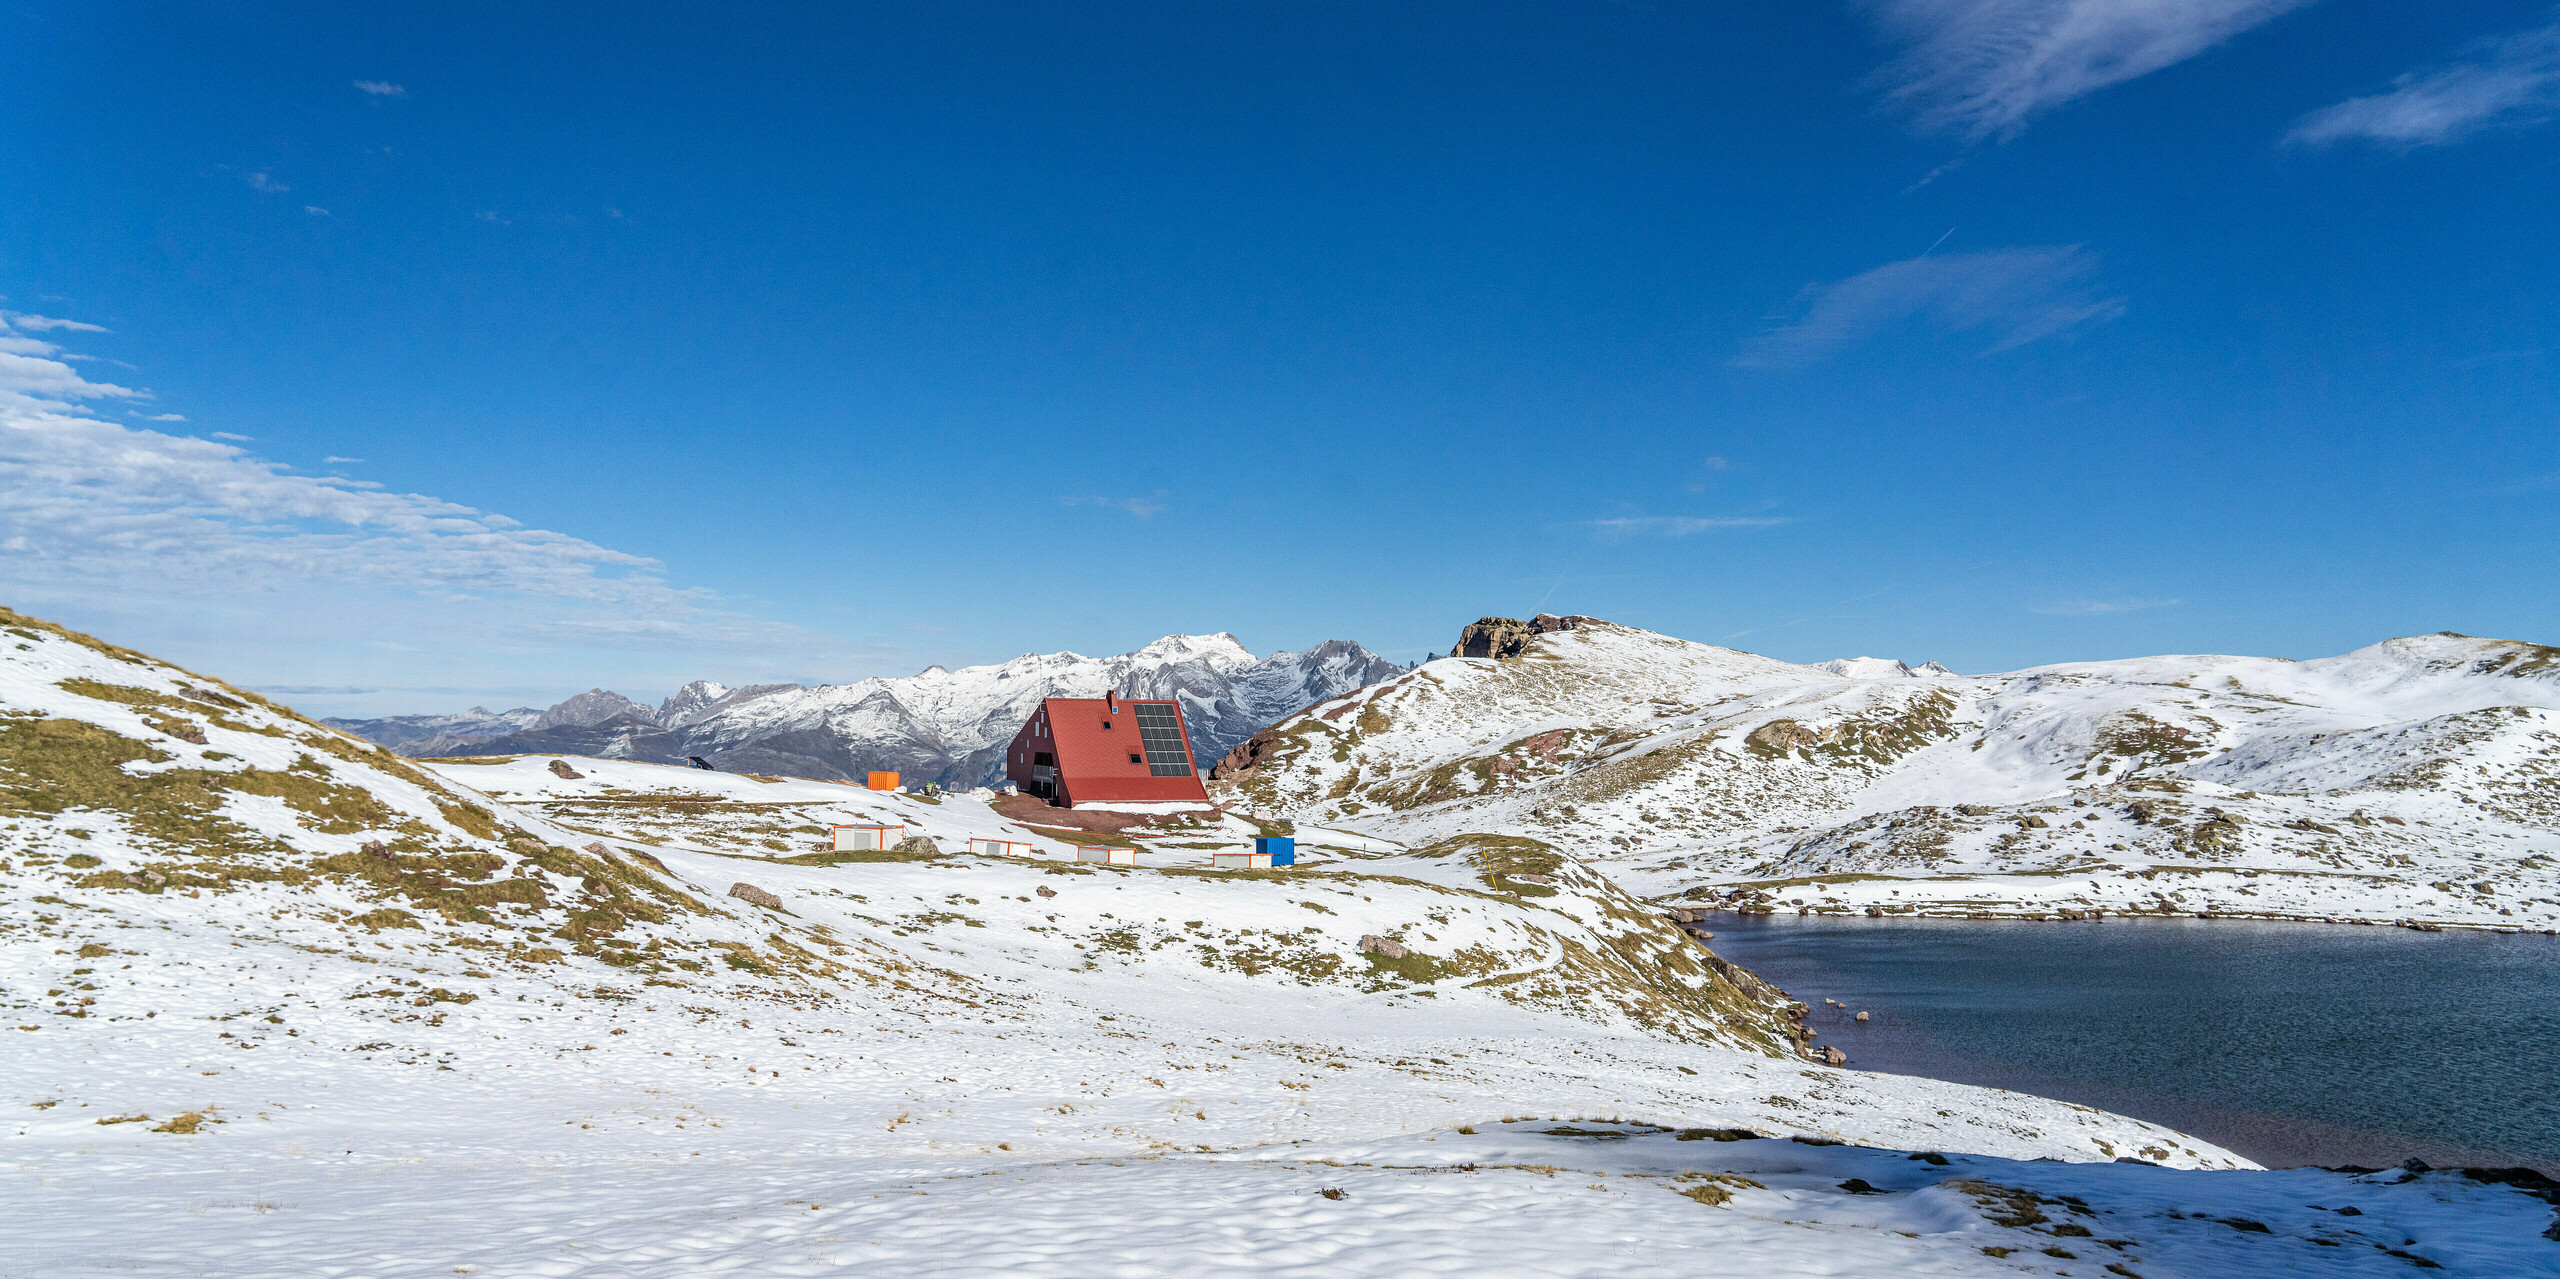 Blick aus der Ferne auf Schutzhütte Arlet im Pyrenäen-Nationalpark mit Schnee und Berge im Hintergrund